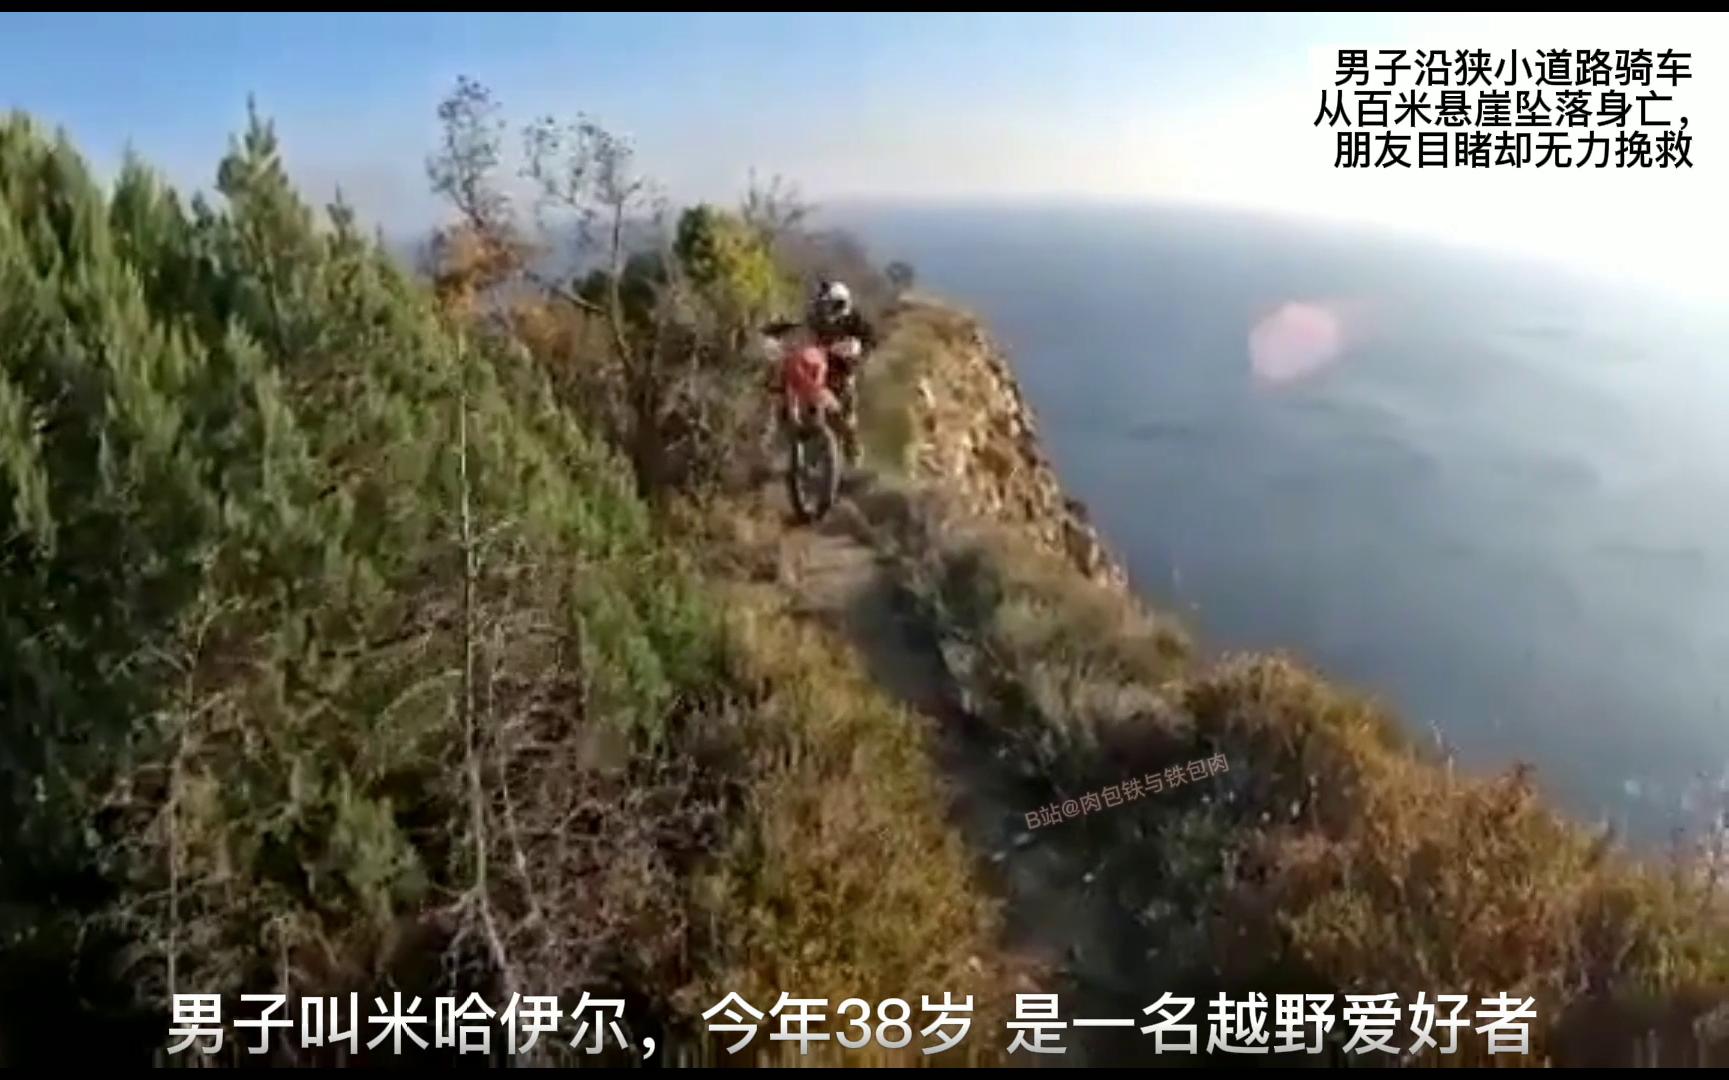 俄罗斯，一名越野男子沿狭小道路骑车从百米悬崖坠落身亡。